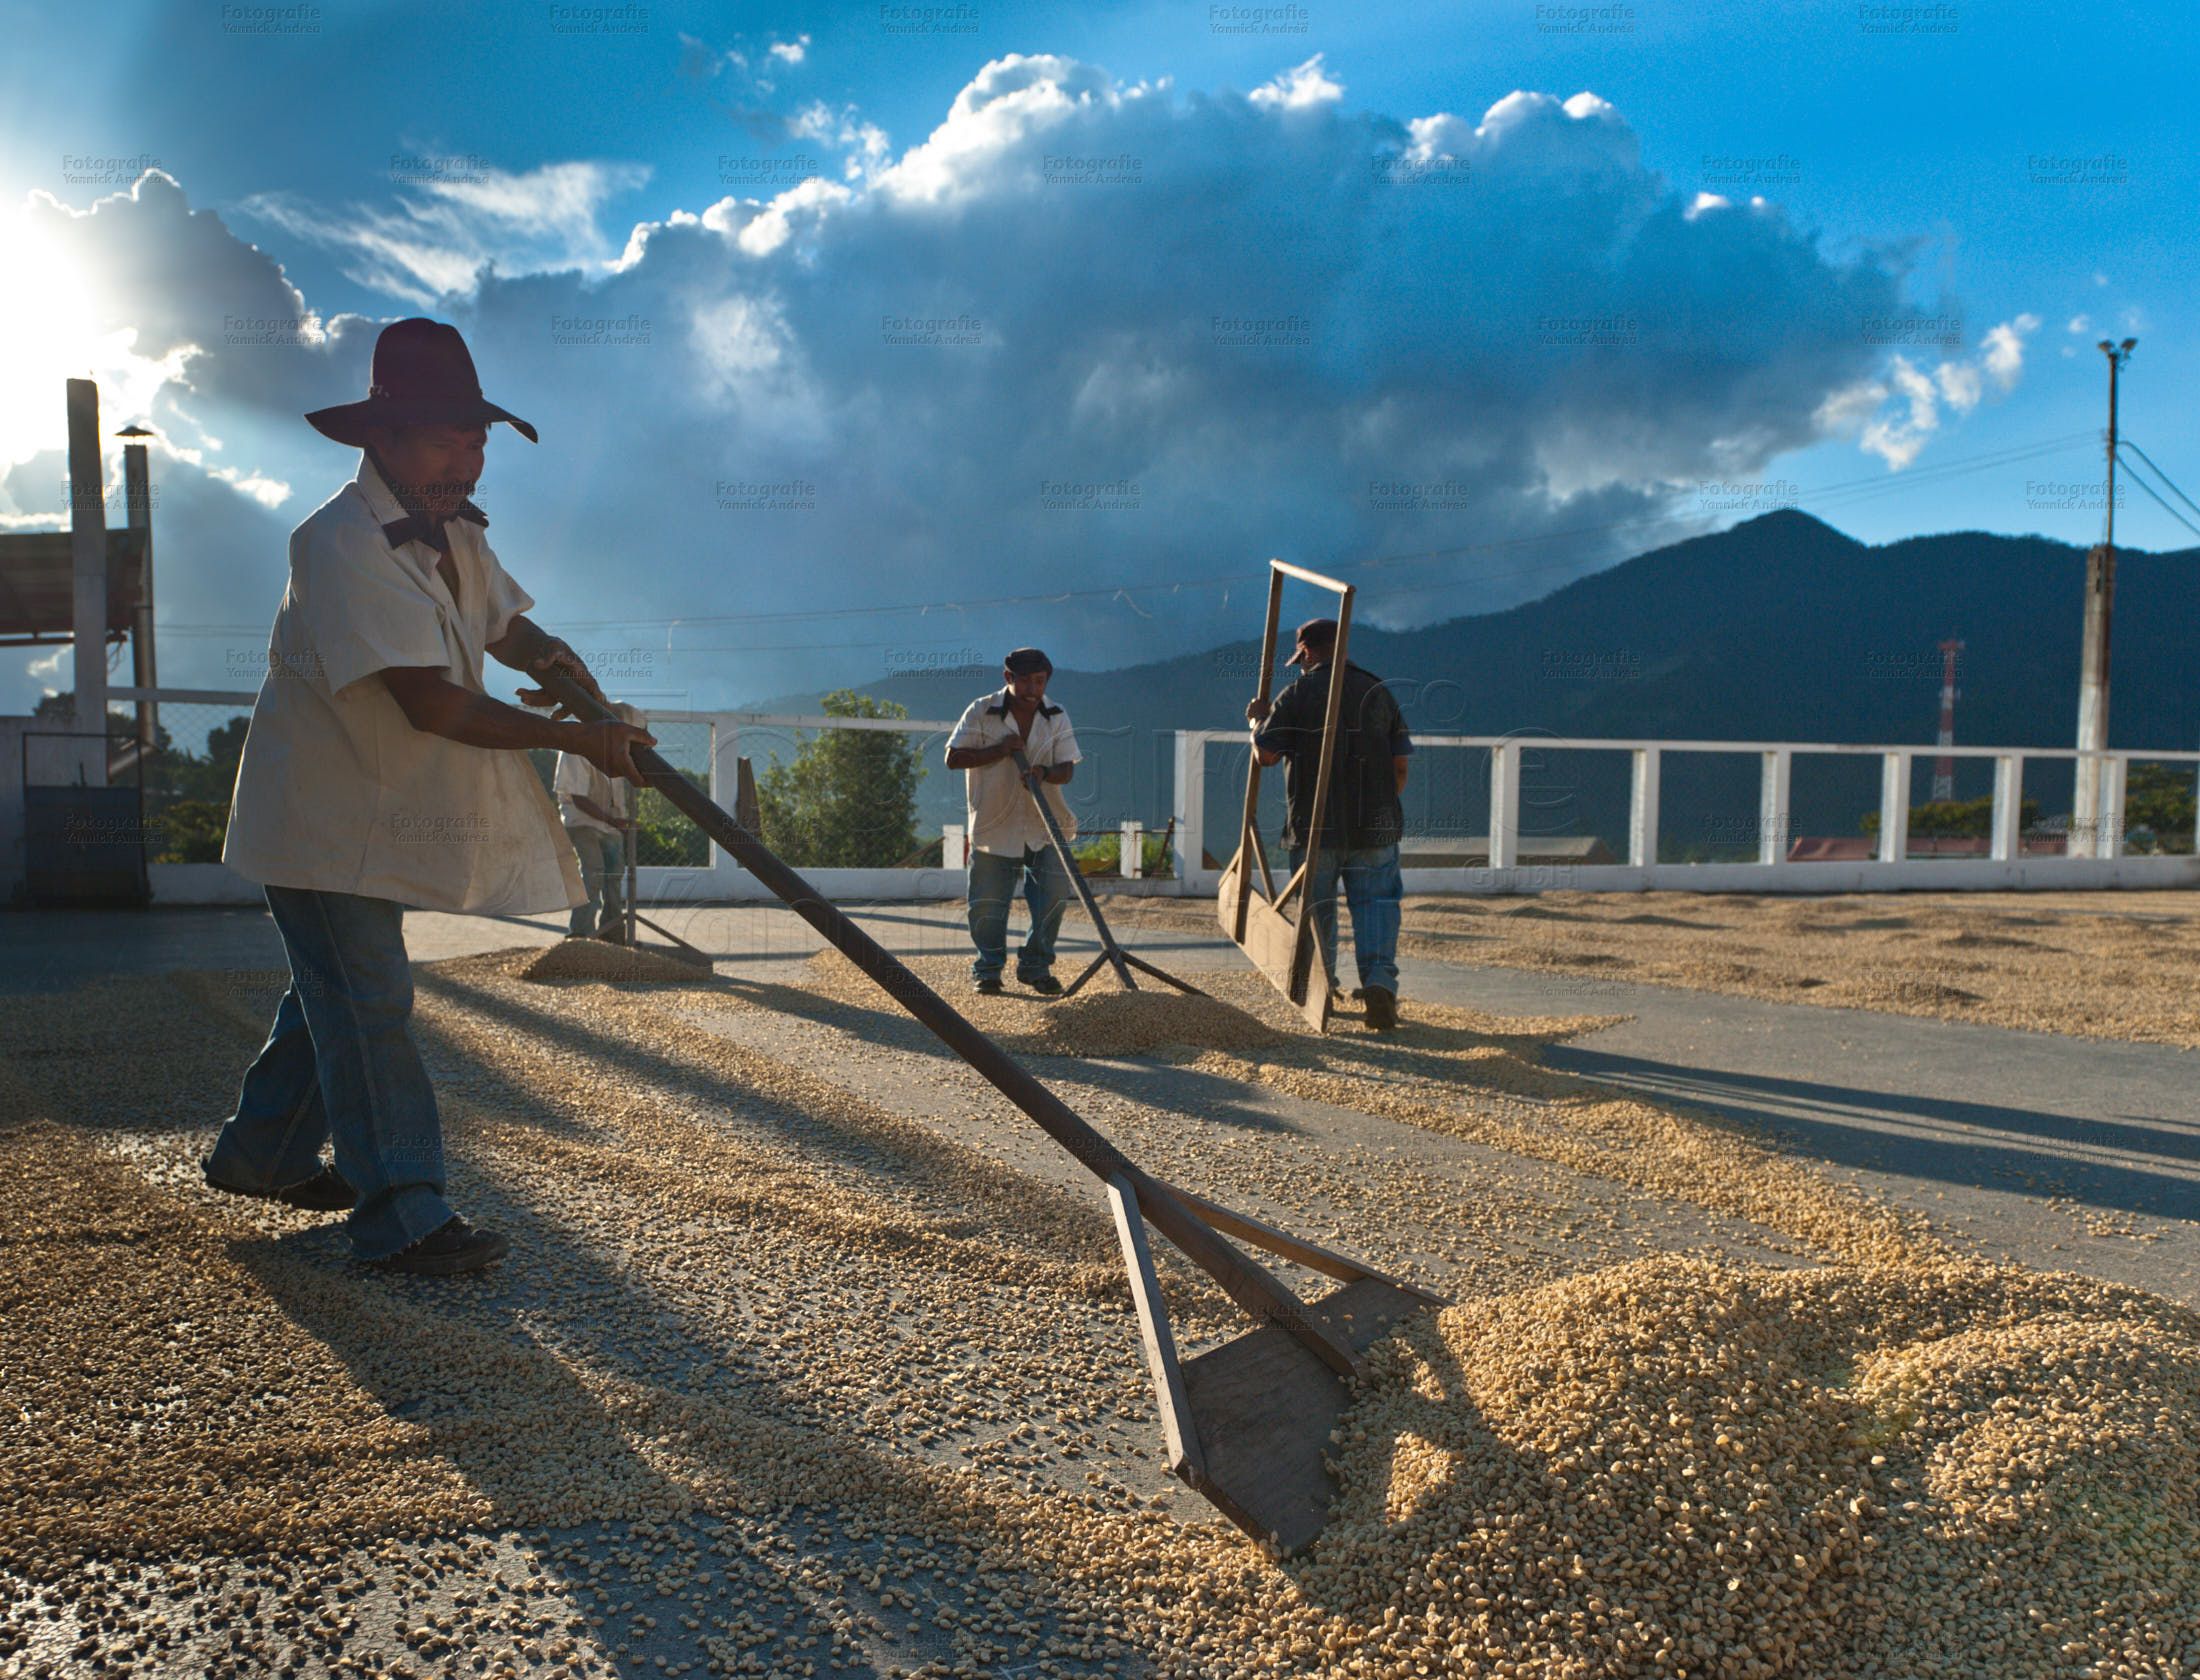 Bild zu dem Thema: Redaktioneller Foto Auftrag mit Erstveröffentlichungsrecht und einmaliger Verwendung. Kaffeebauern in Guatemala wenden mit Holzschiebern den unter freiem Himmel zum trocknene ausgebreiteten Kaffee.